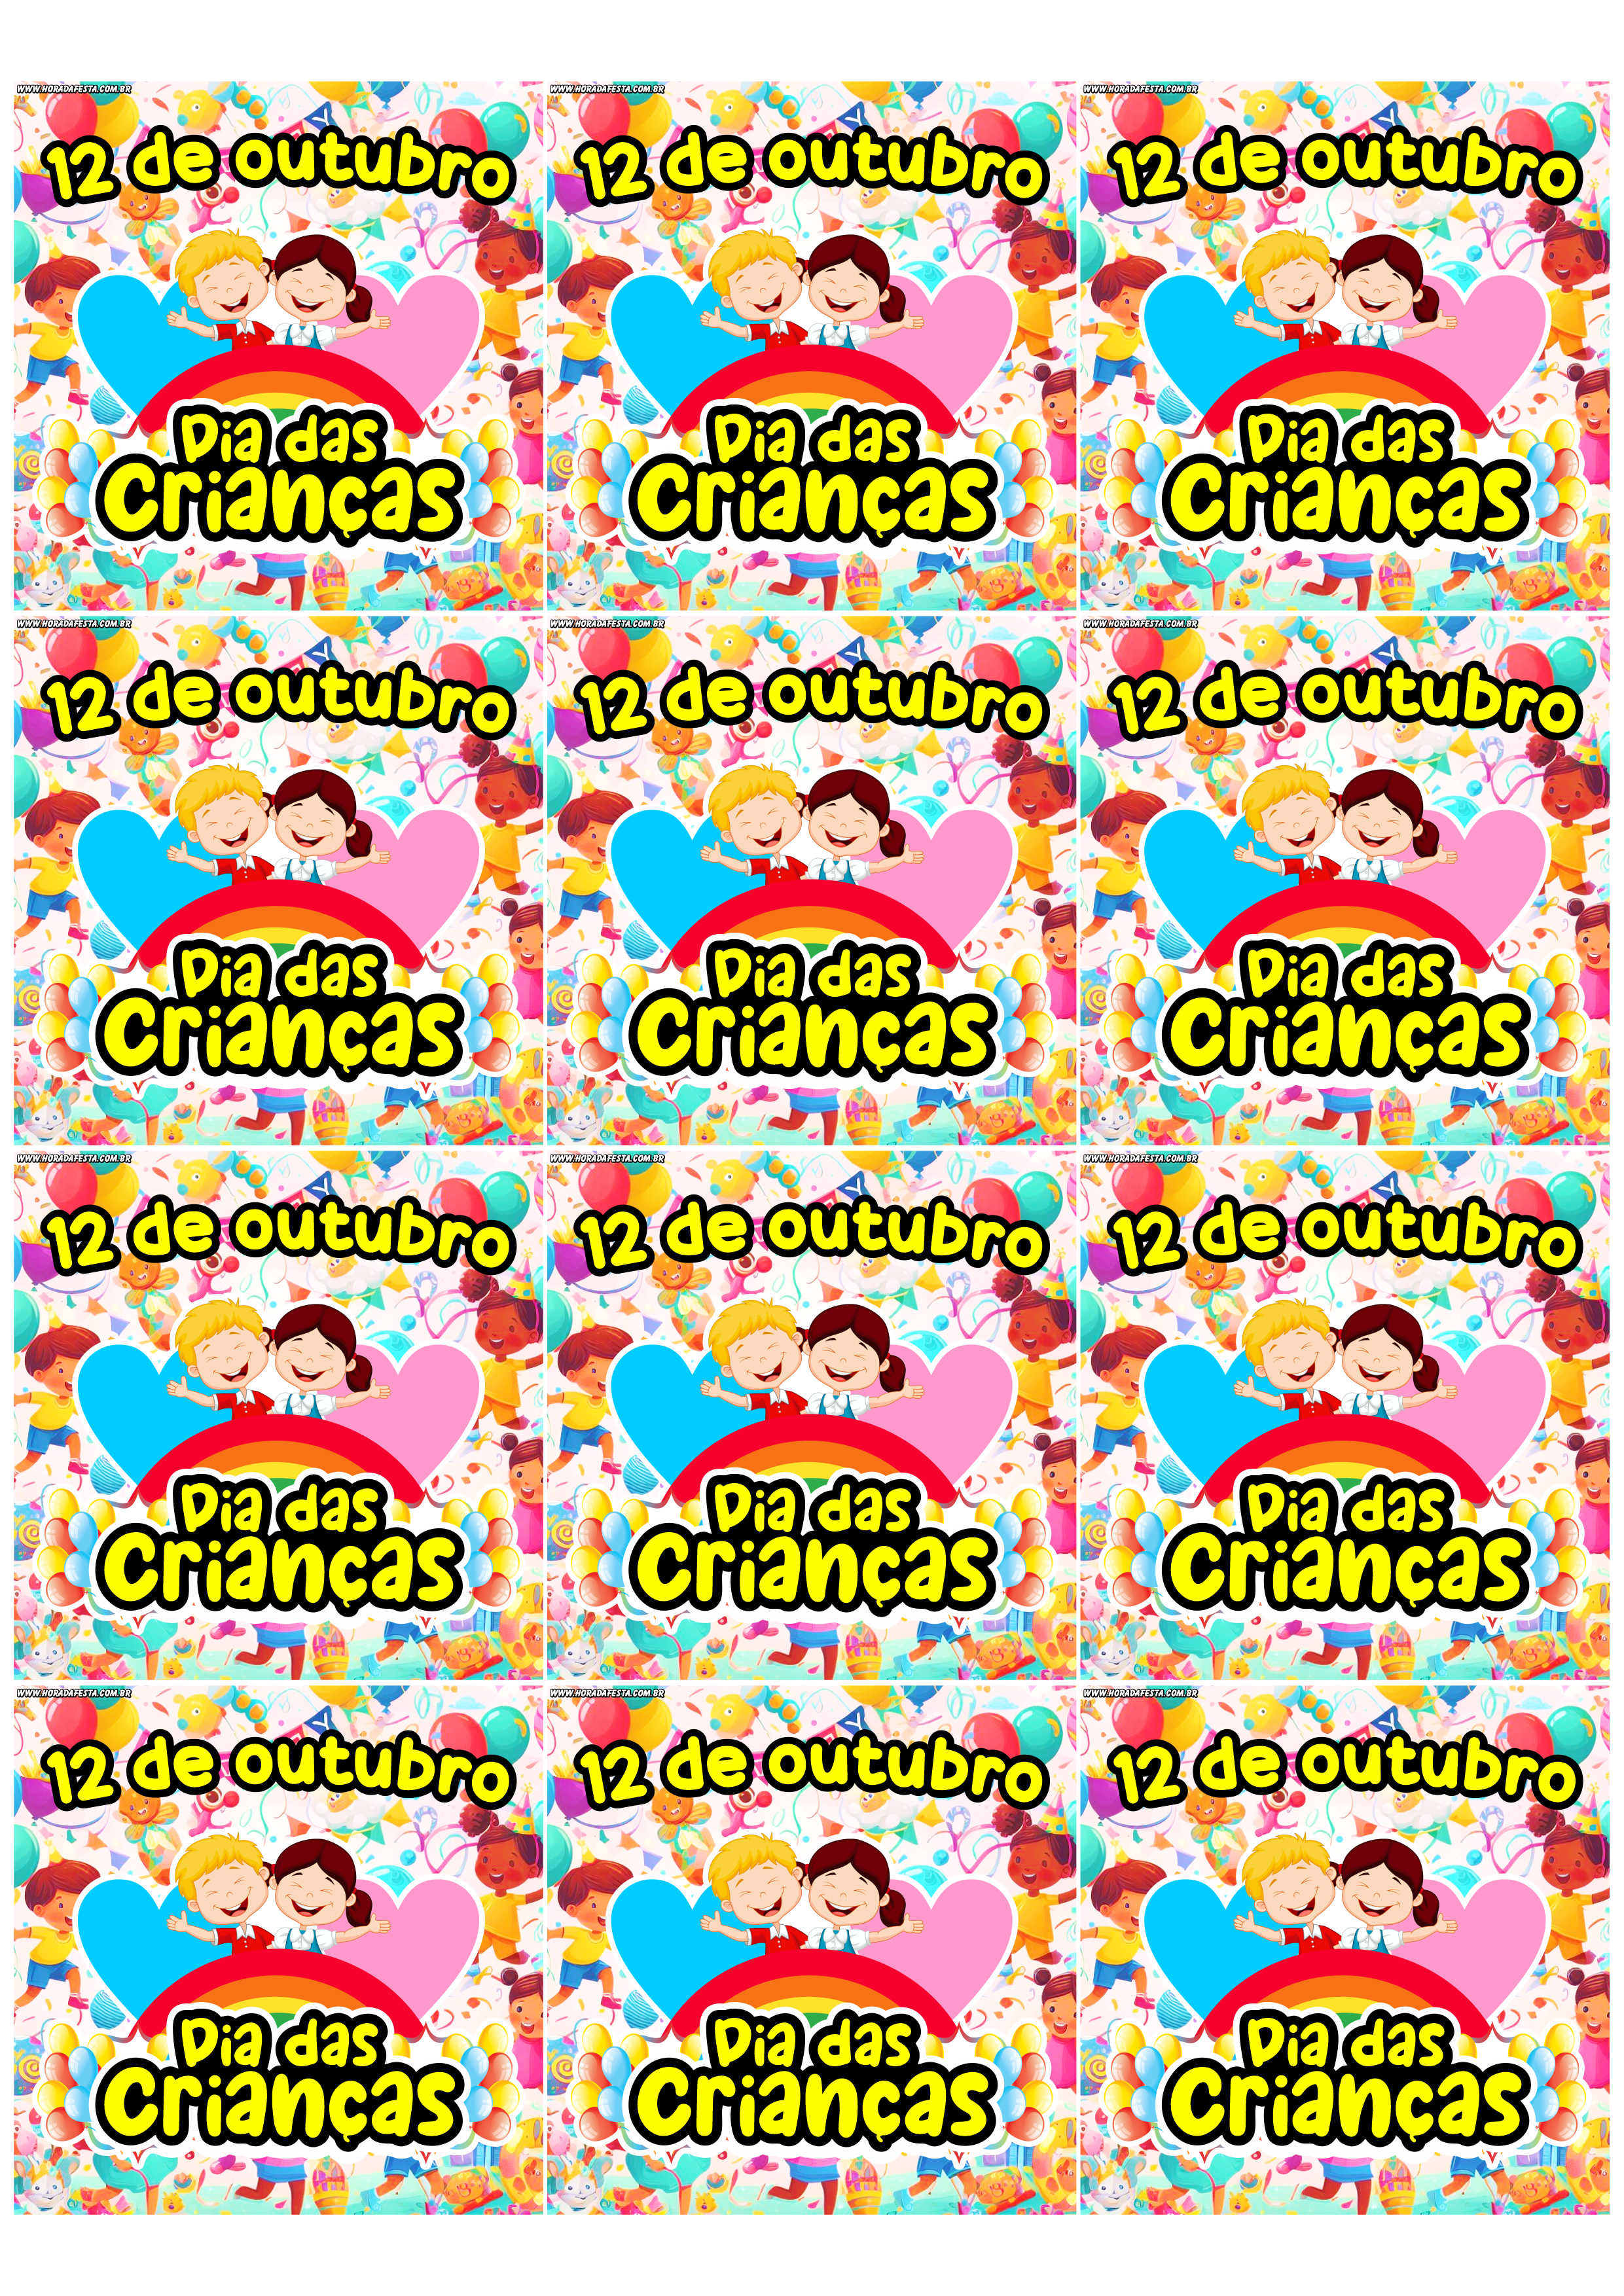 Dia das crianças 12 de outubro adesivo tag sticker etiqueta para decoração quadrado 12 imagens png